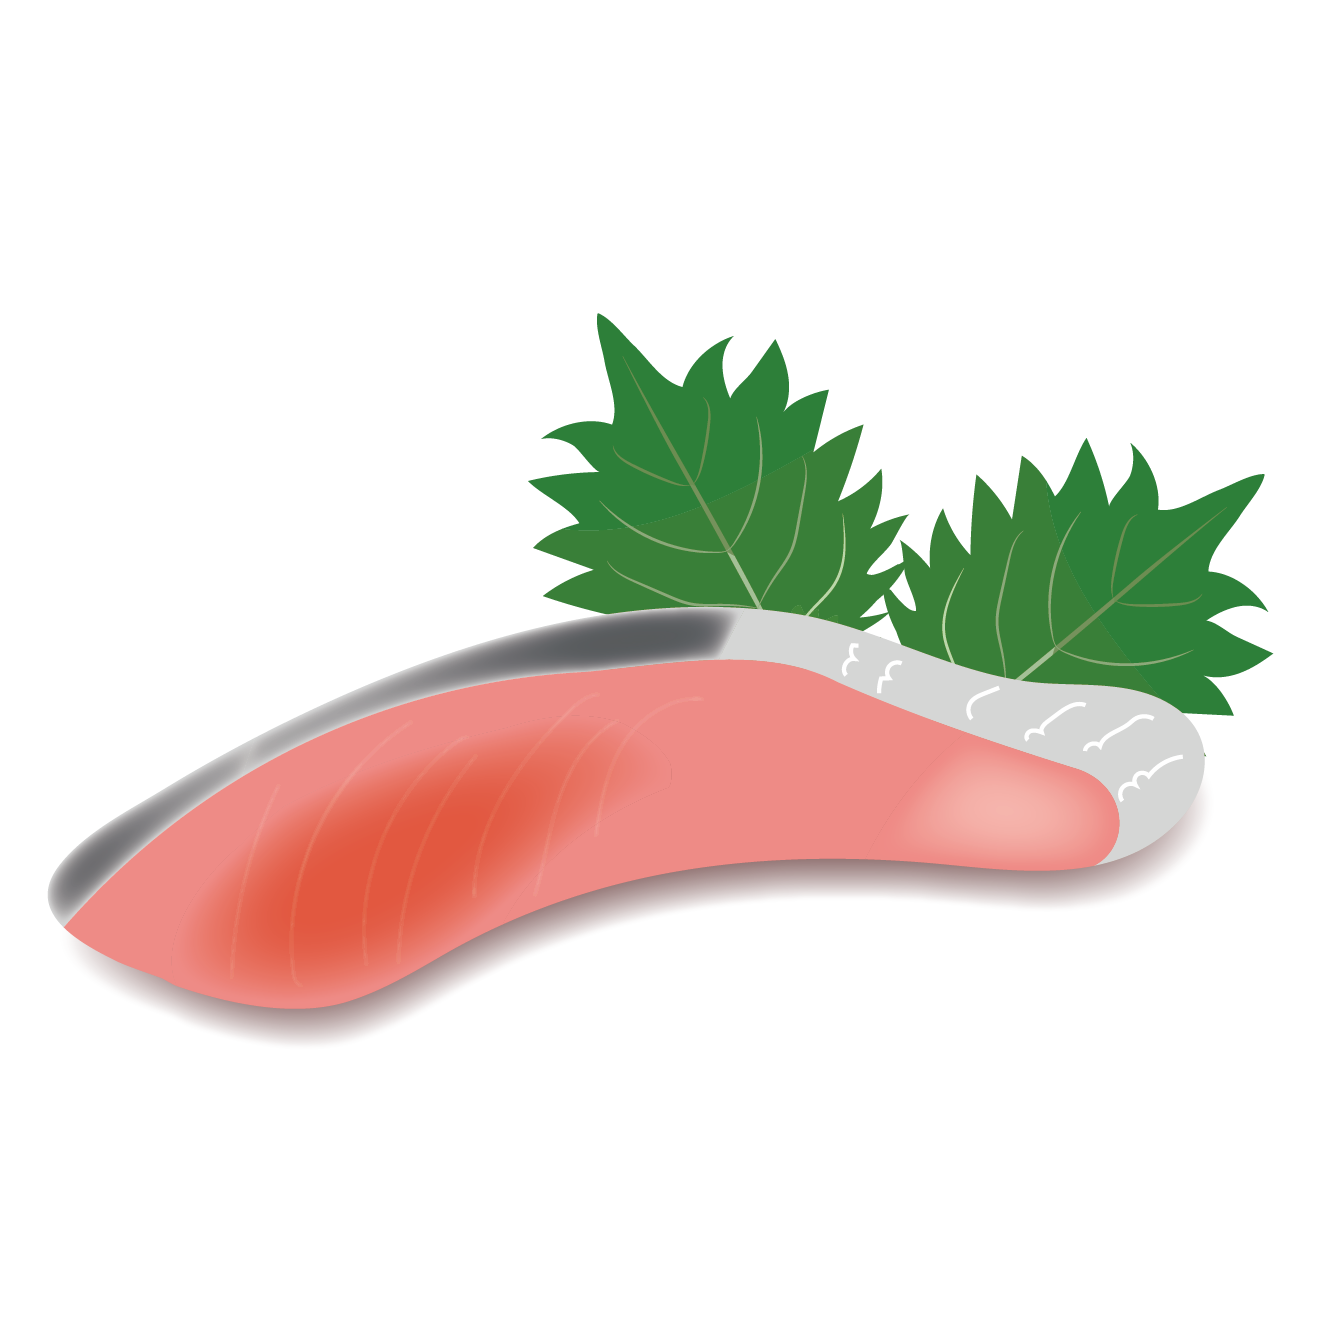 鮭 サケ シャケ の切身のイラスト 魚 商用フリー 無料 のイラスト素材なら イラストマンション